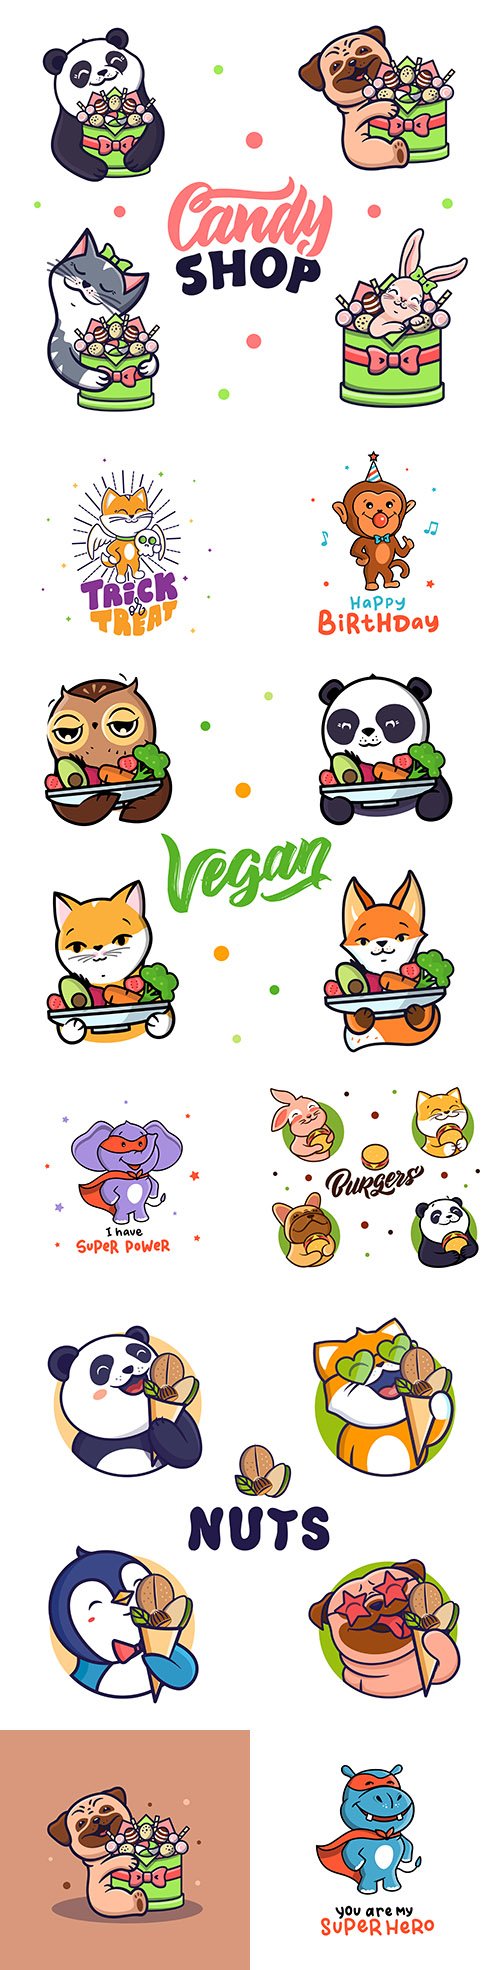 Animal cute cartoon emblem and logos design